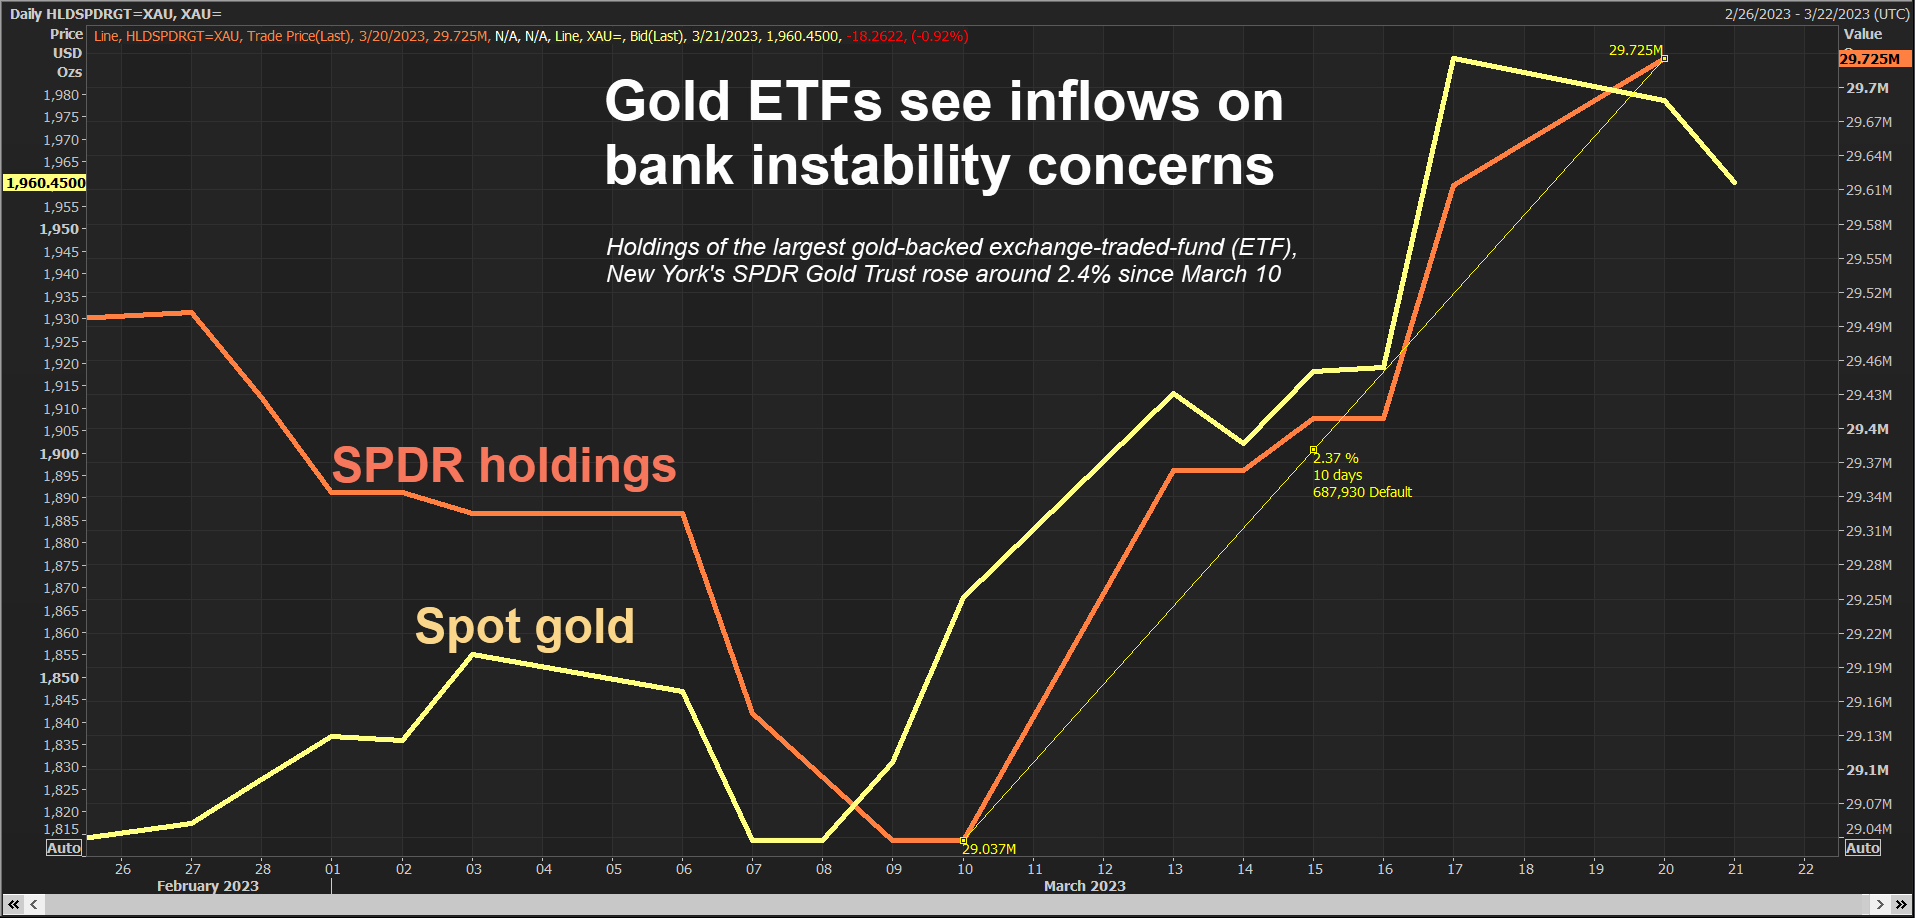 Gold ETF holdings